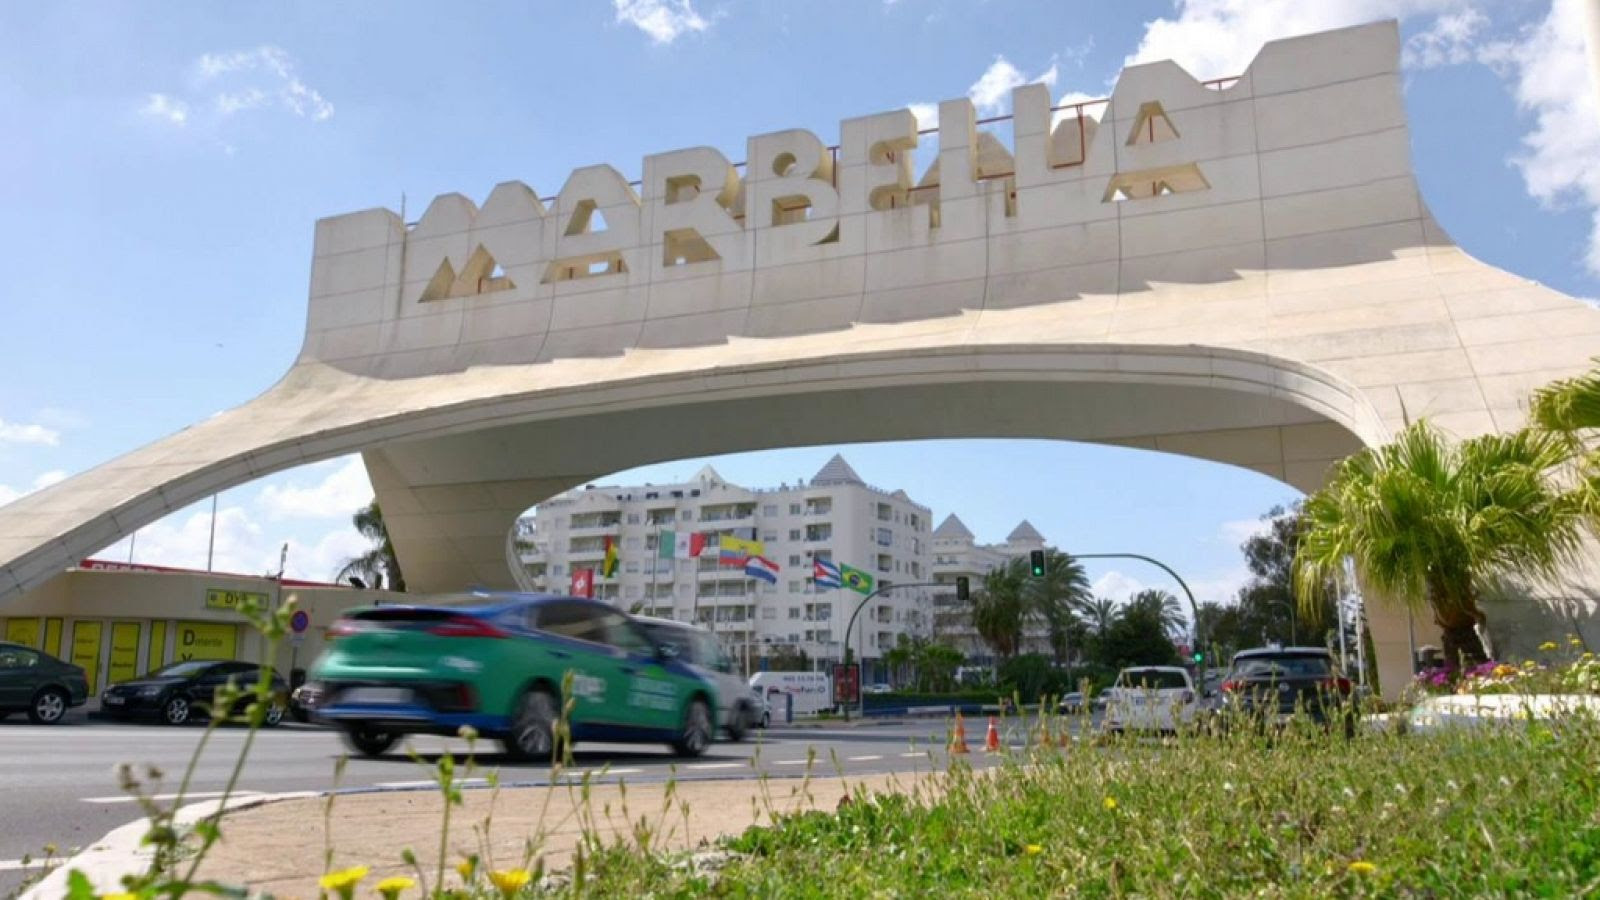 Arranca en verde - Marbella - ver  ahora